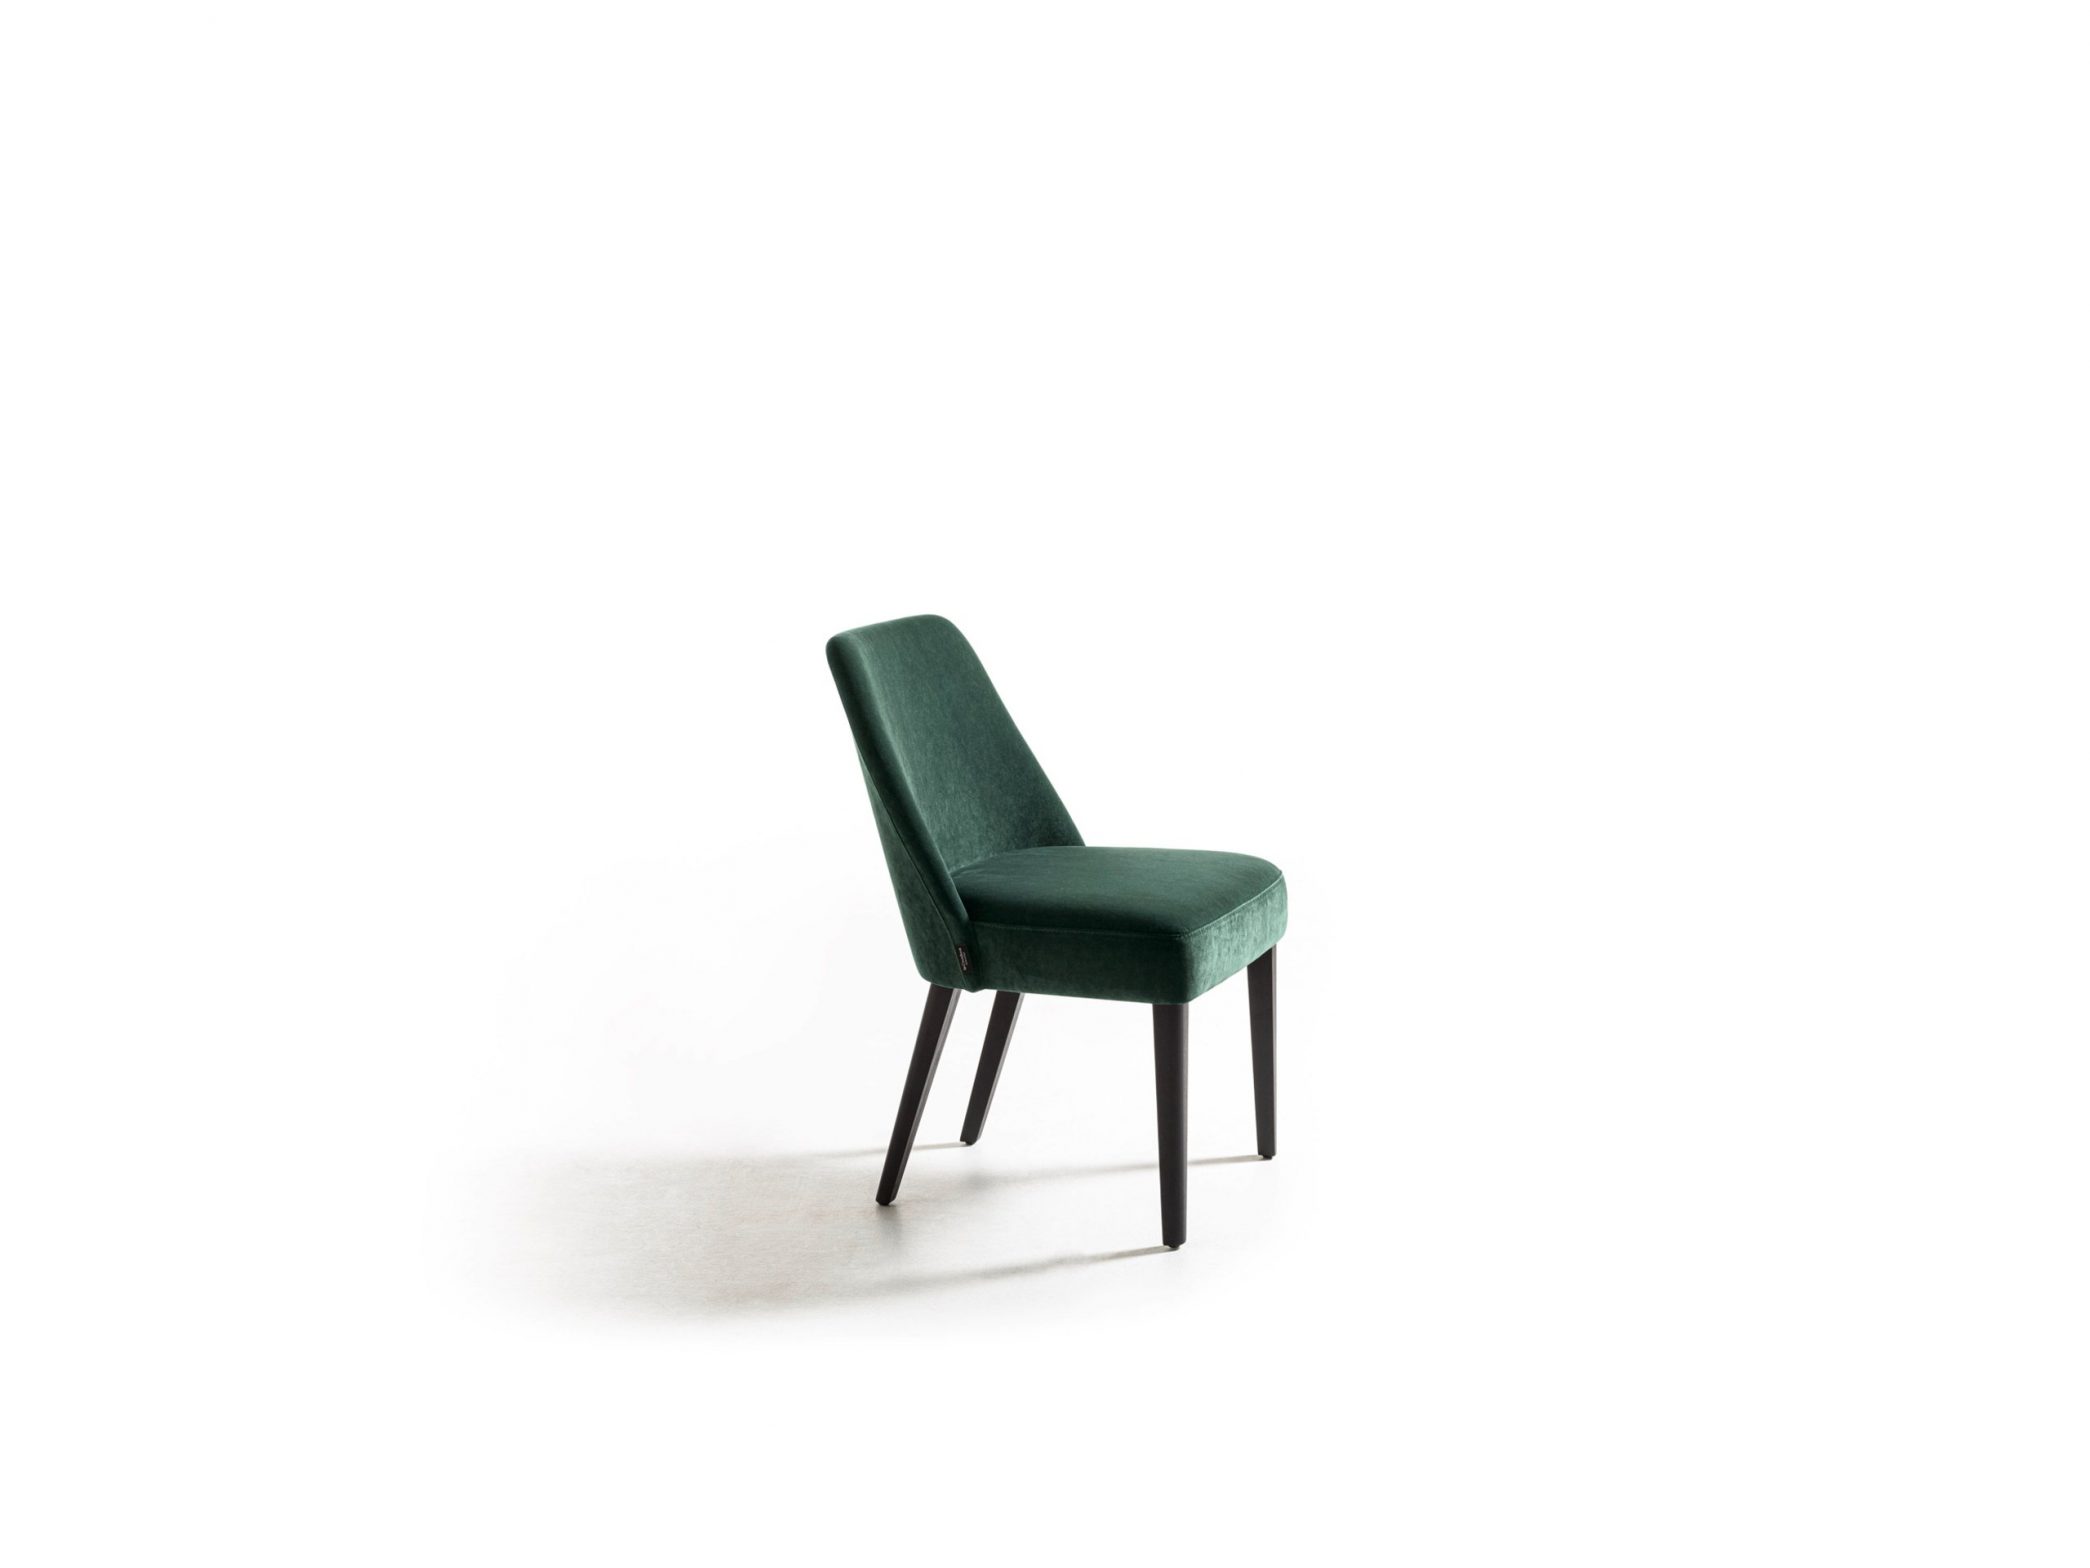 velour-chair-landscape-2090x1568